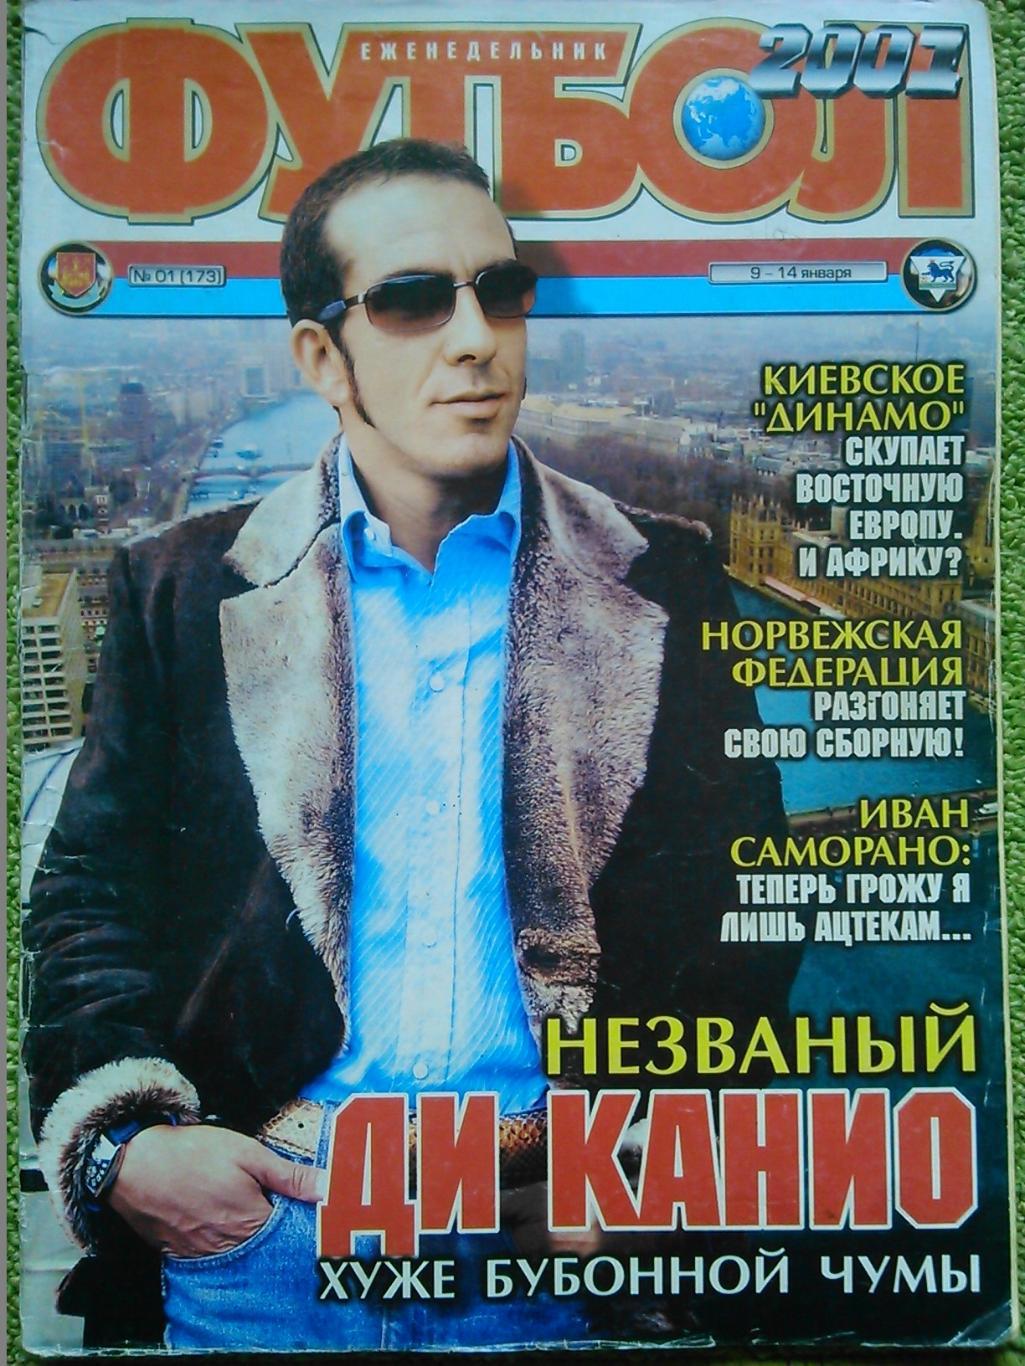 Футбол (Украина)№01.(173.) 2001. (для почитателей Ди Канио) Оптом скидки до 50%!